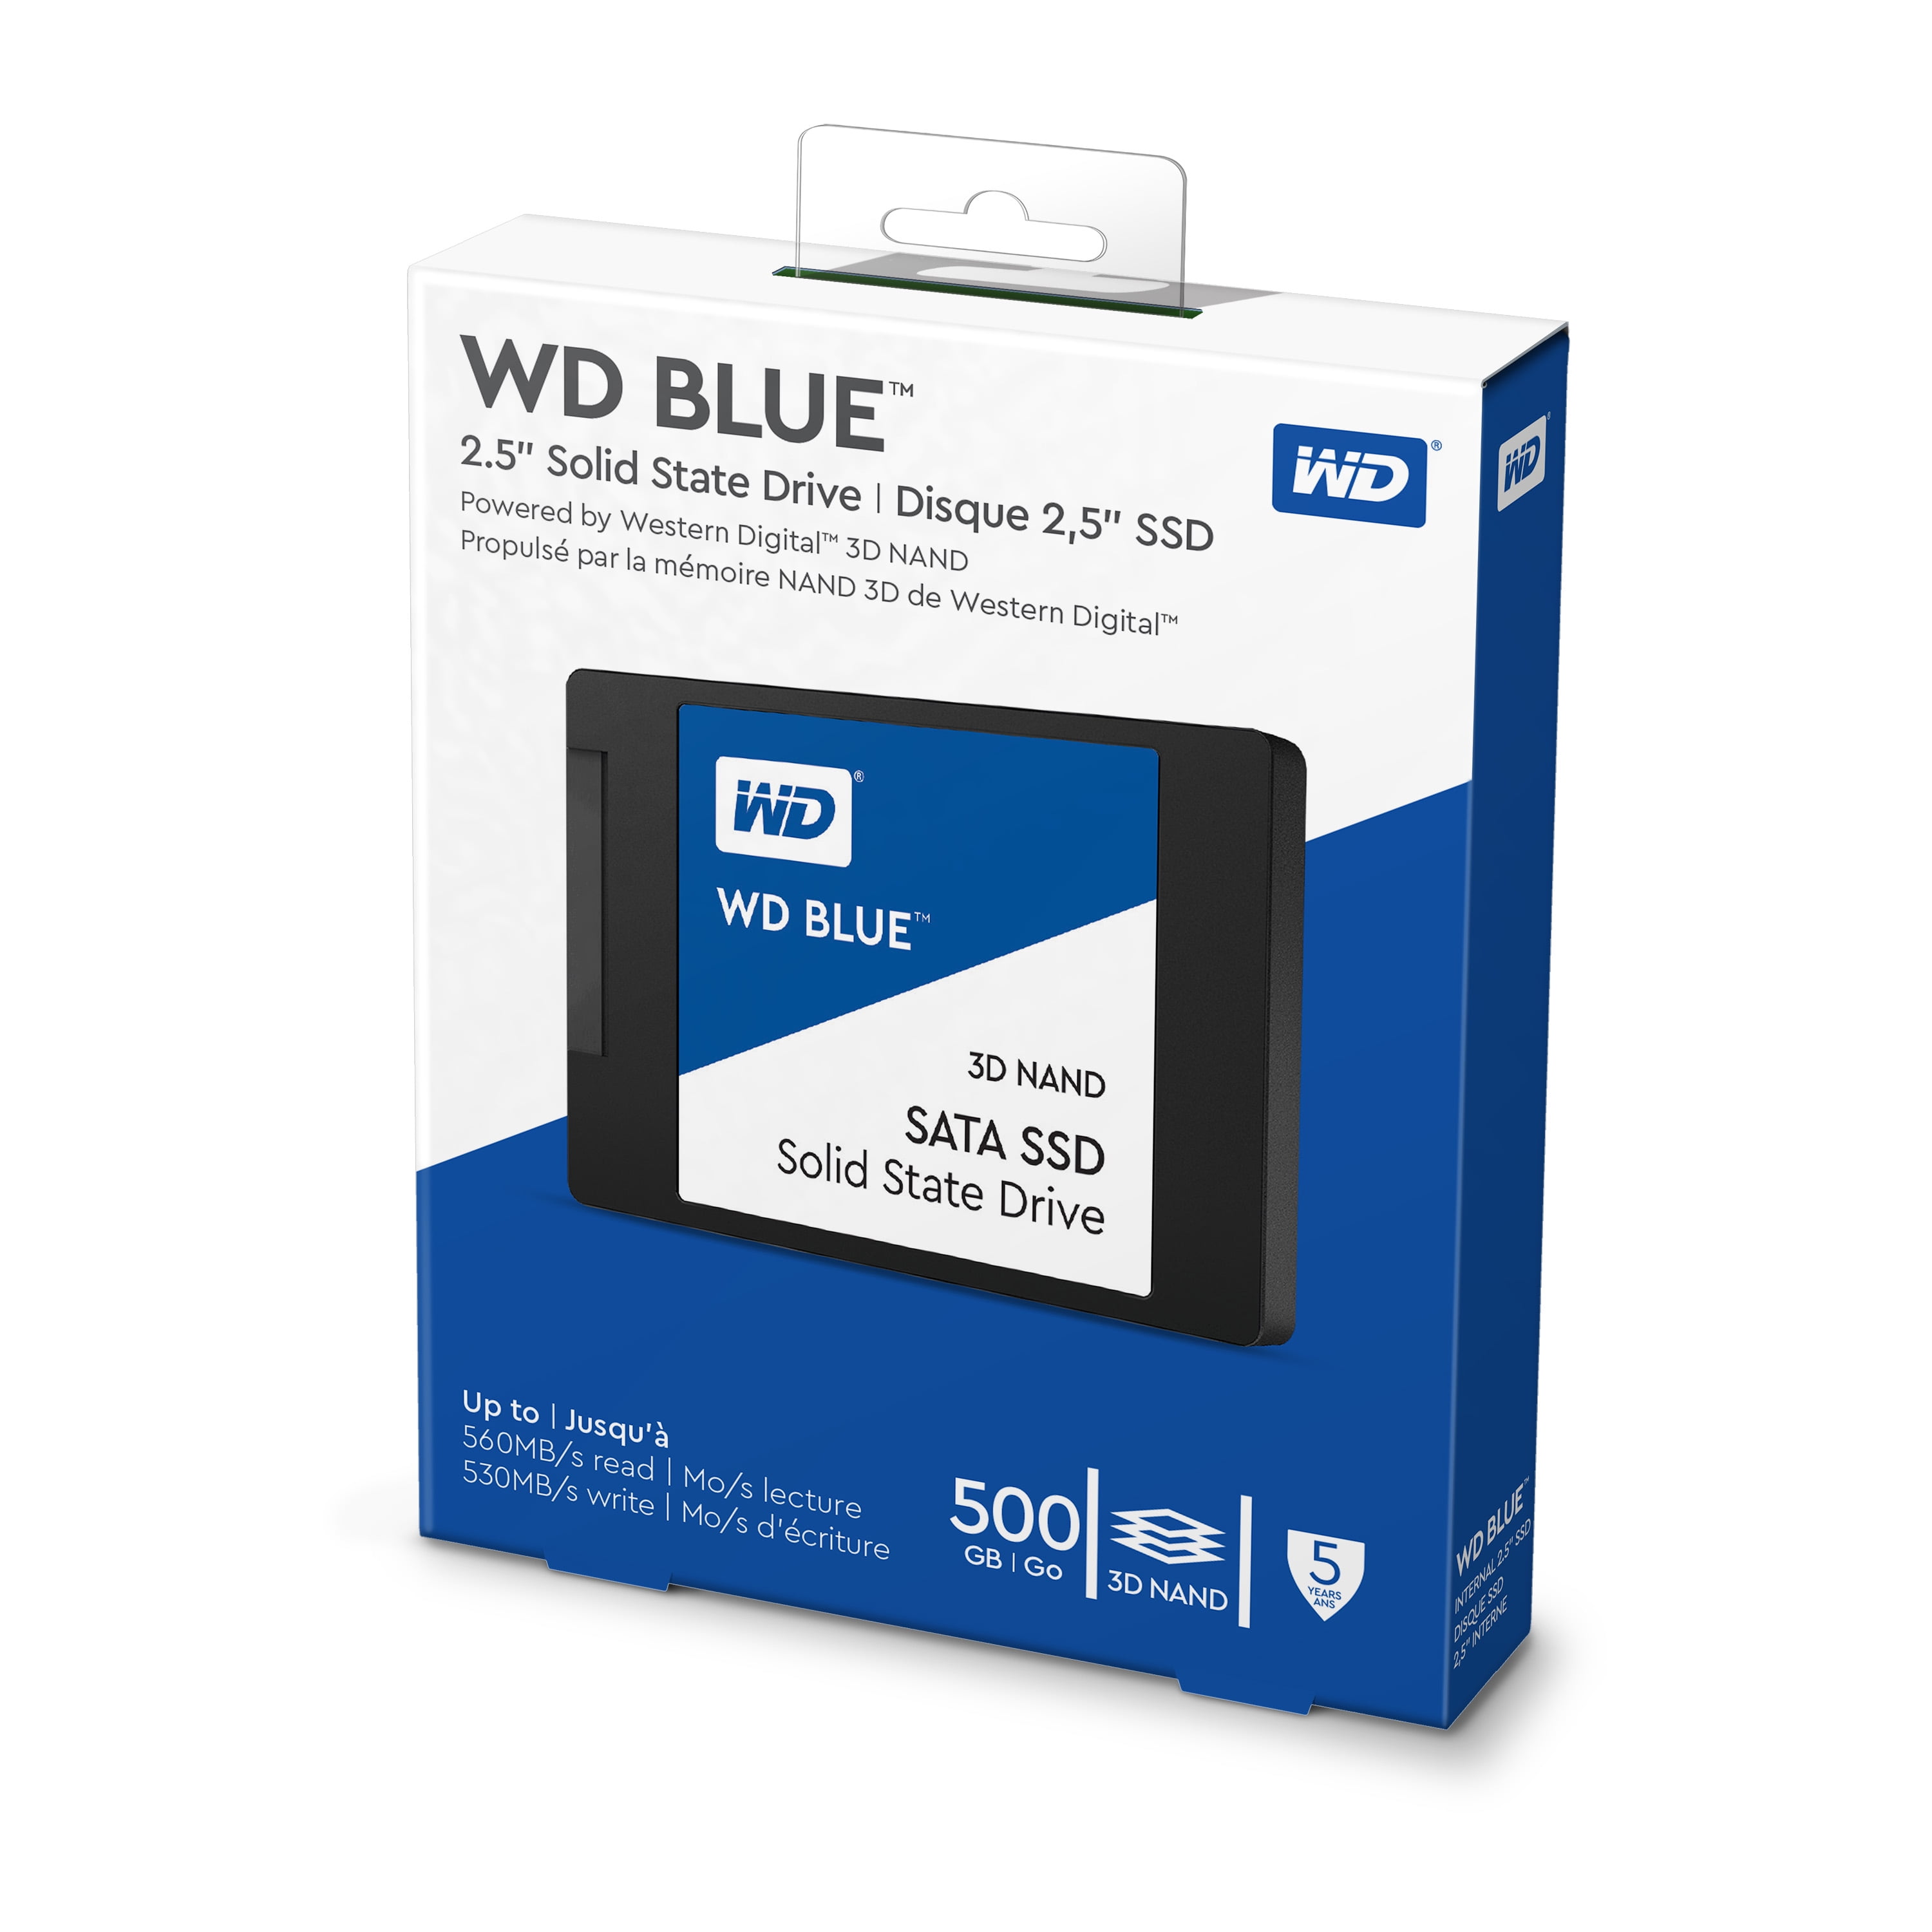 WD Blue 3D NAND SATA SSD 500GB - - Walmart.com